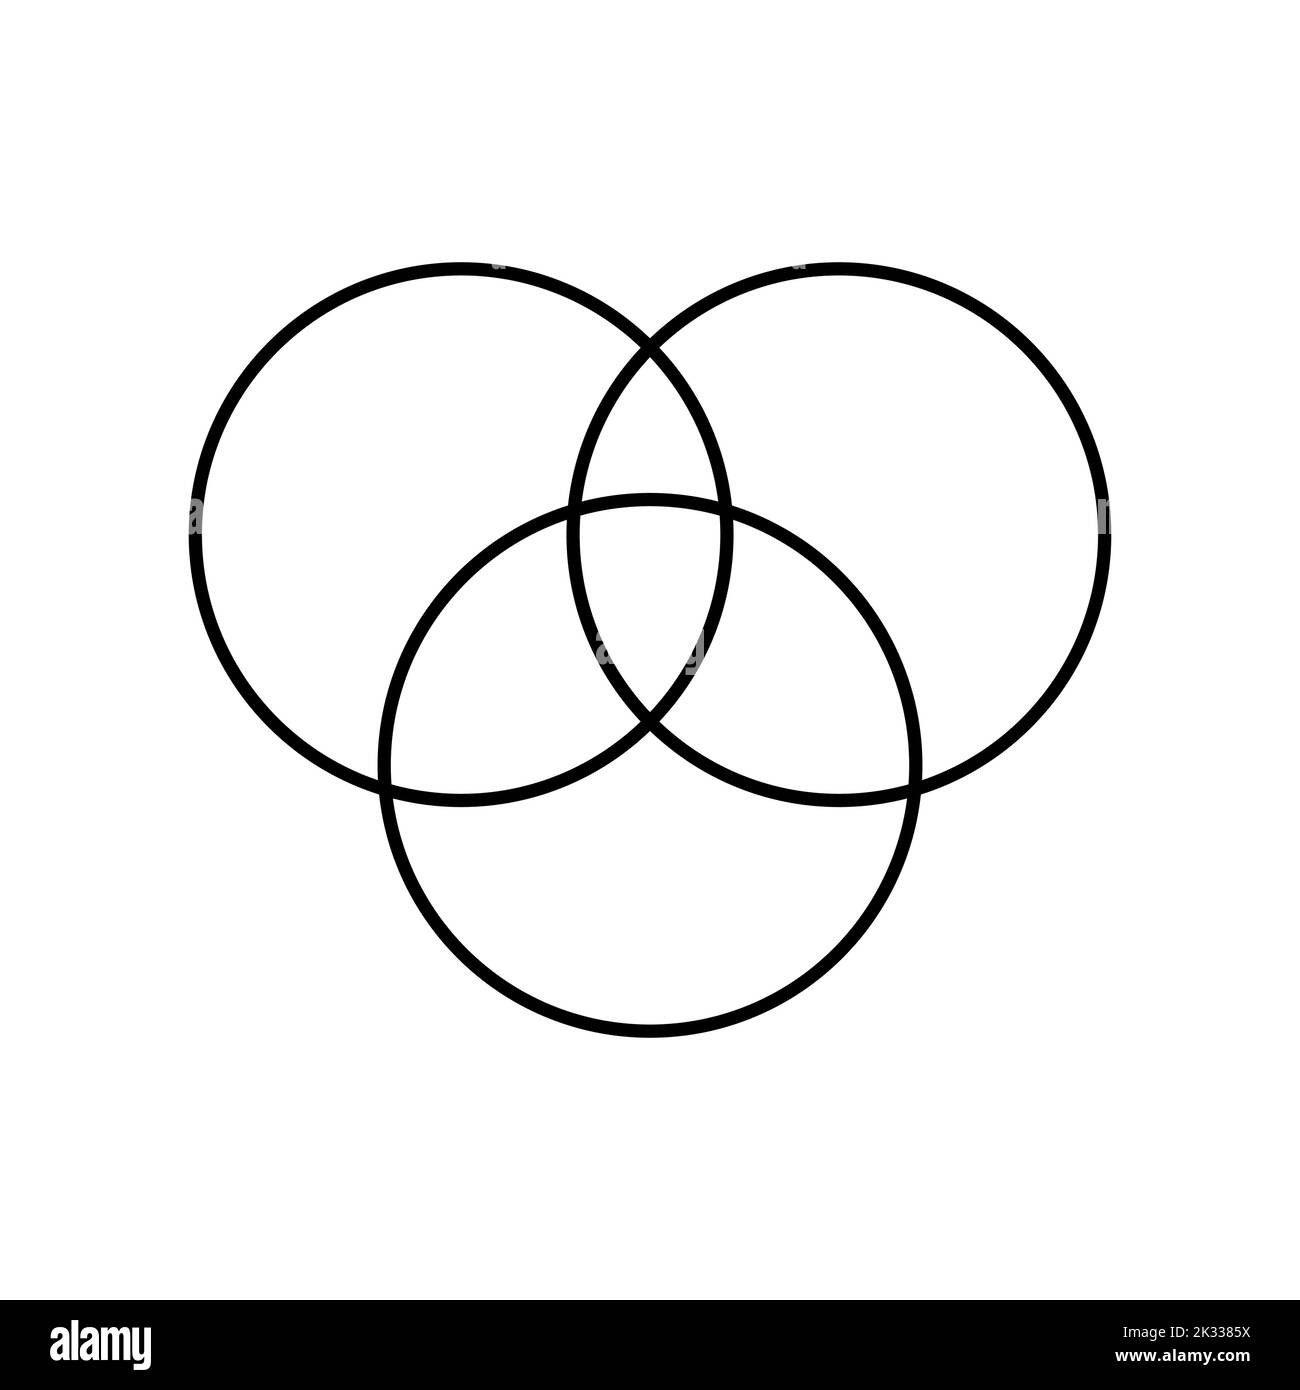 Intersection of three sets circles. Venn diagram of 3 sets Stock Vector